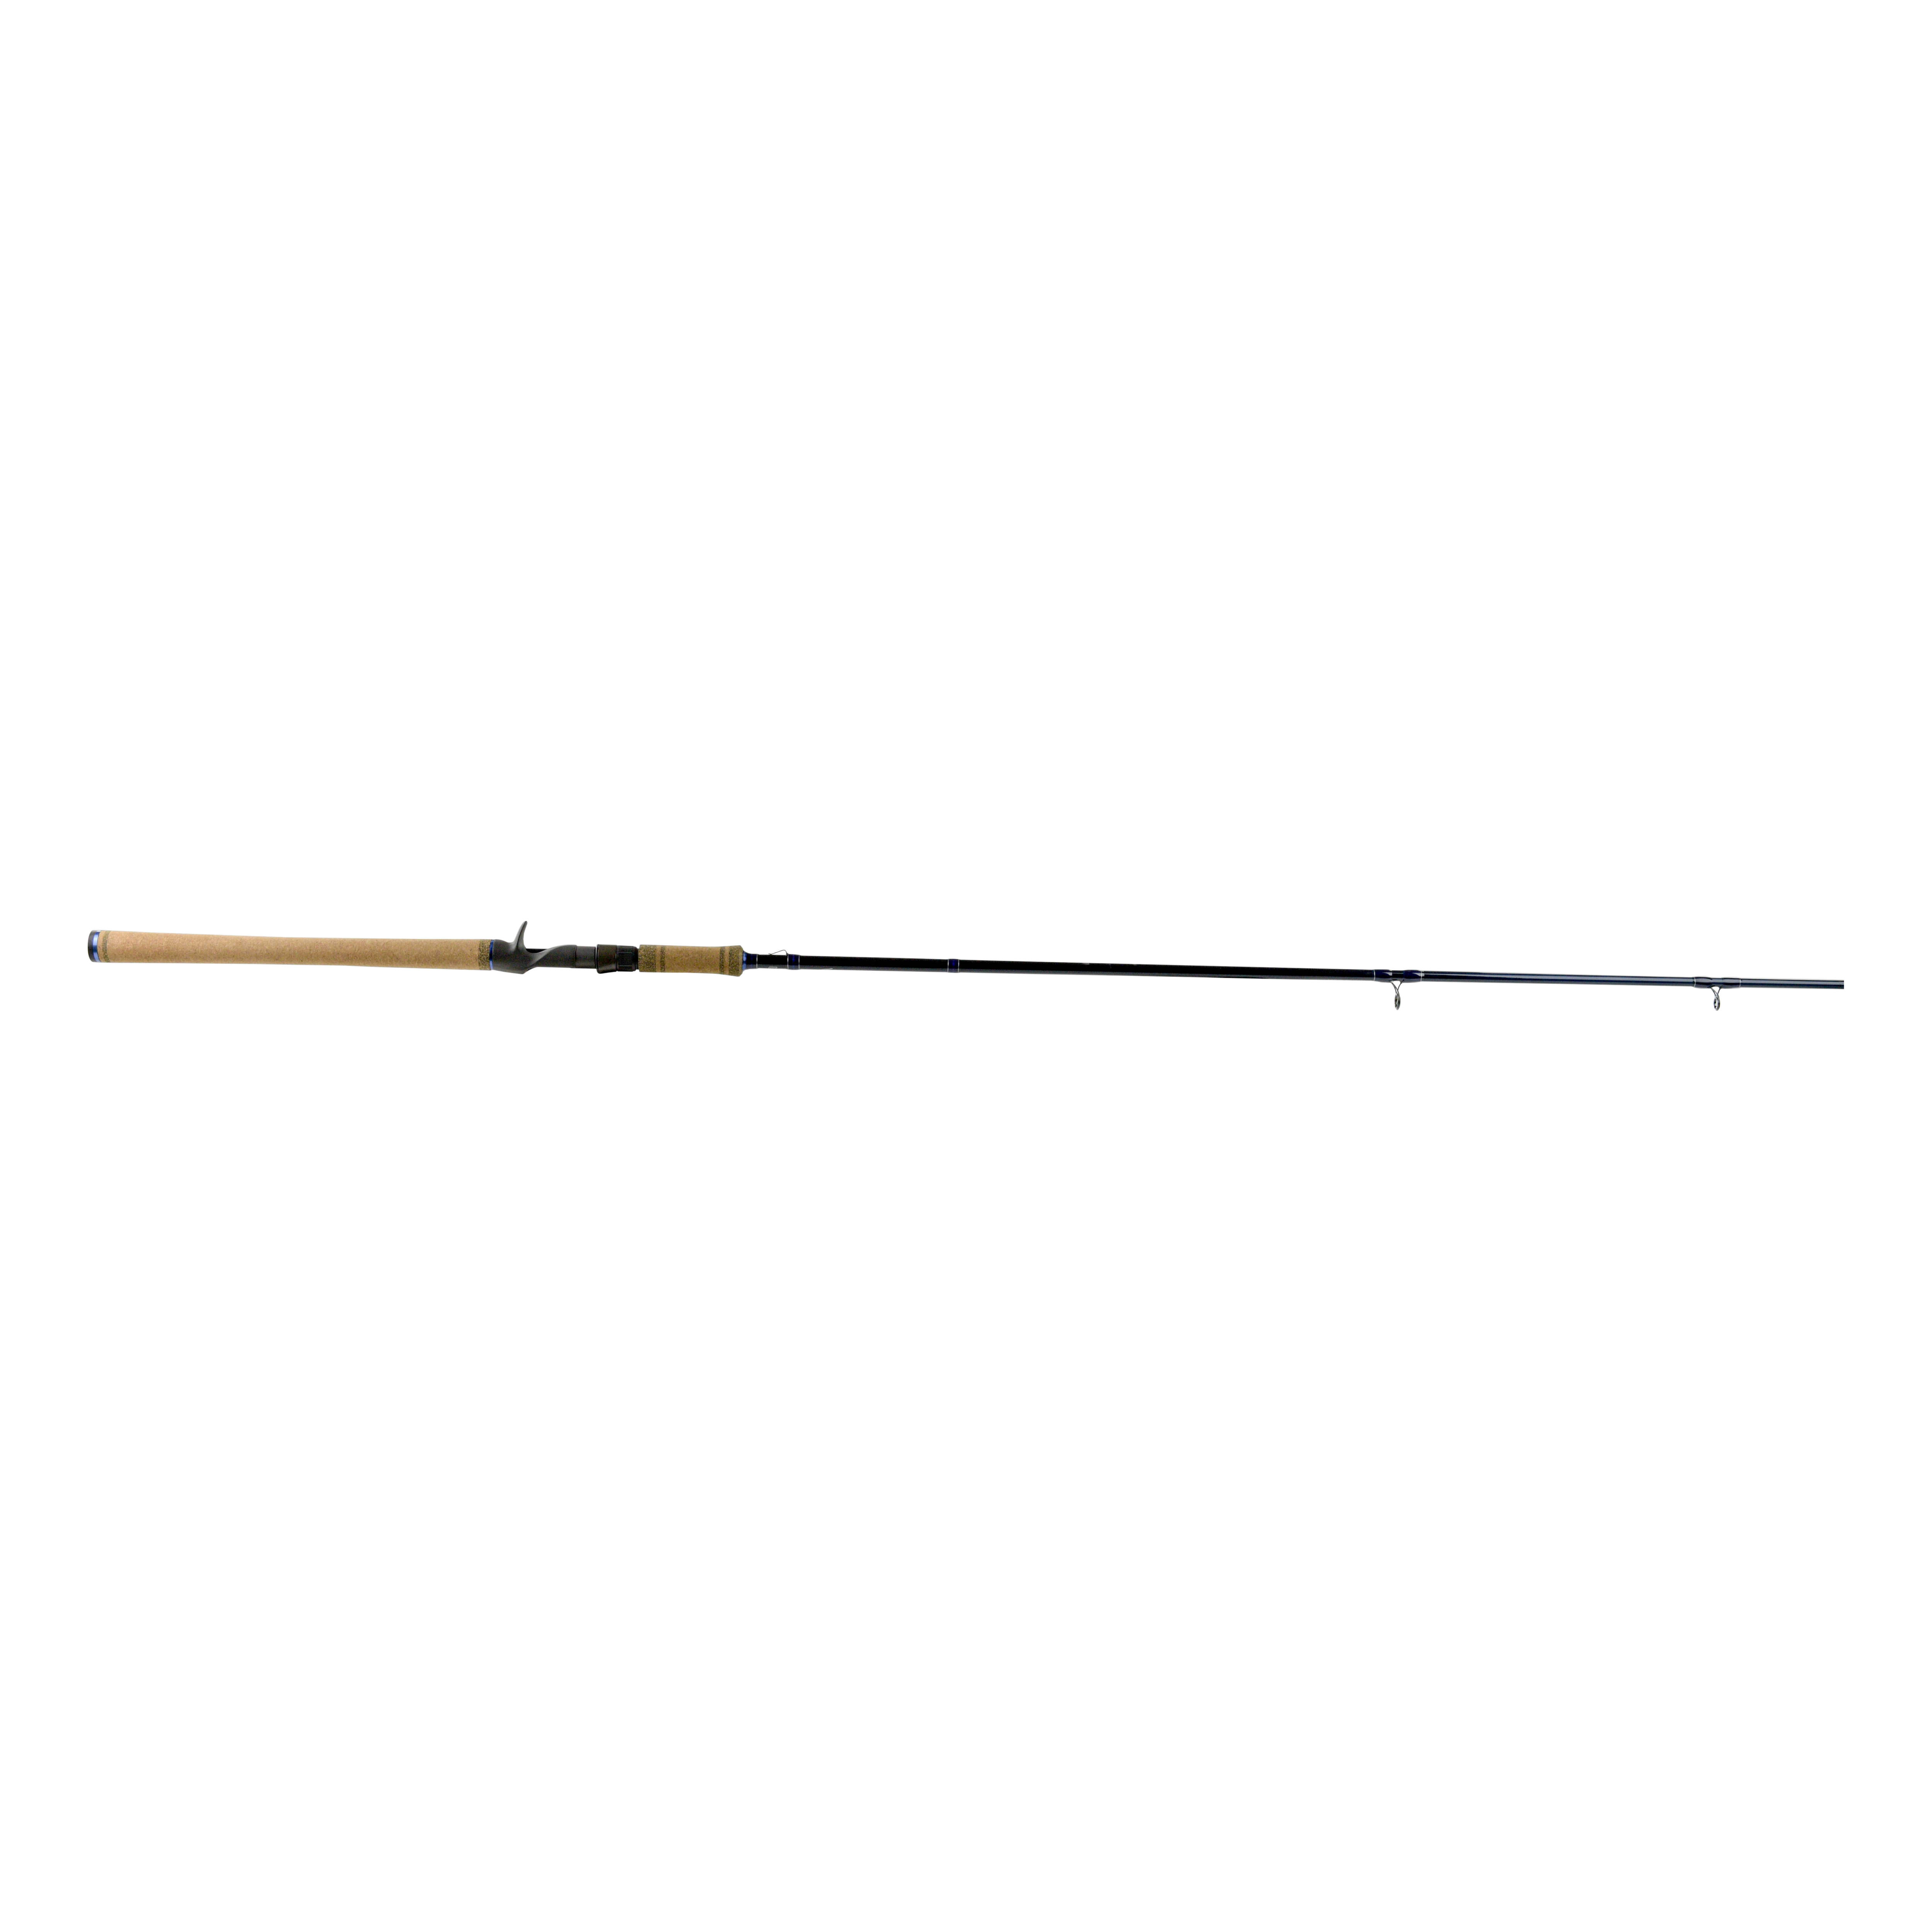 7' 6 Light Action Kokanee Salmon Downrigger Rod: “PRO KOKANEE III